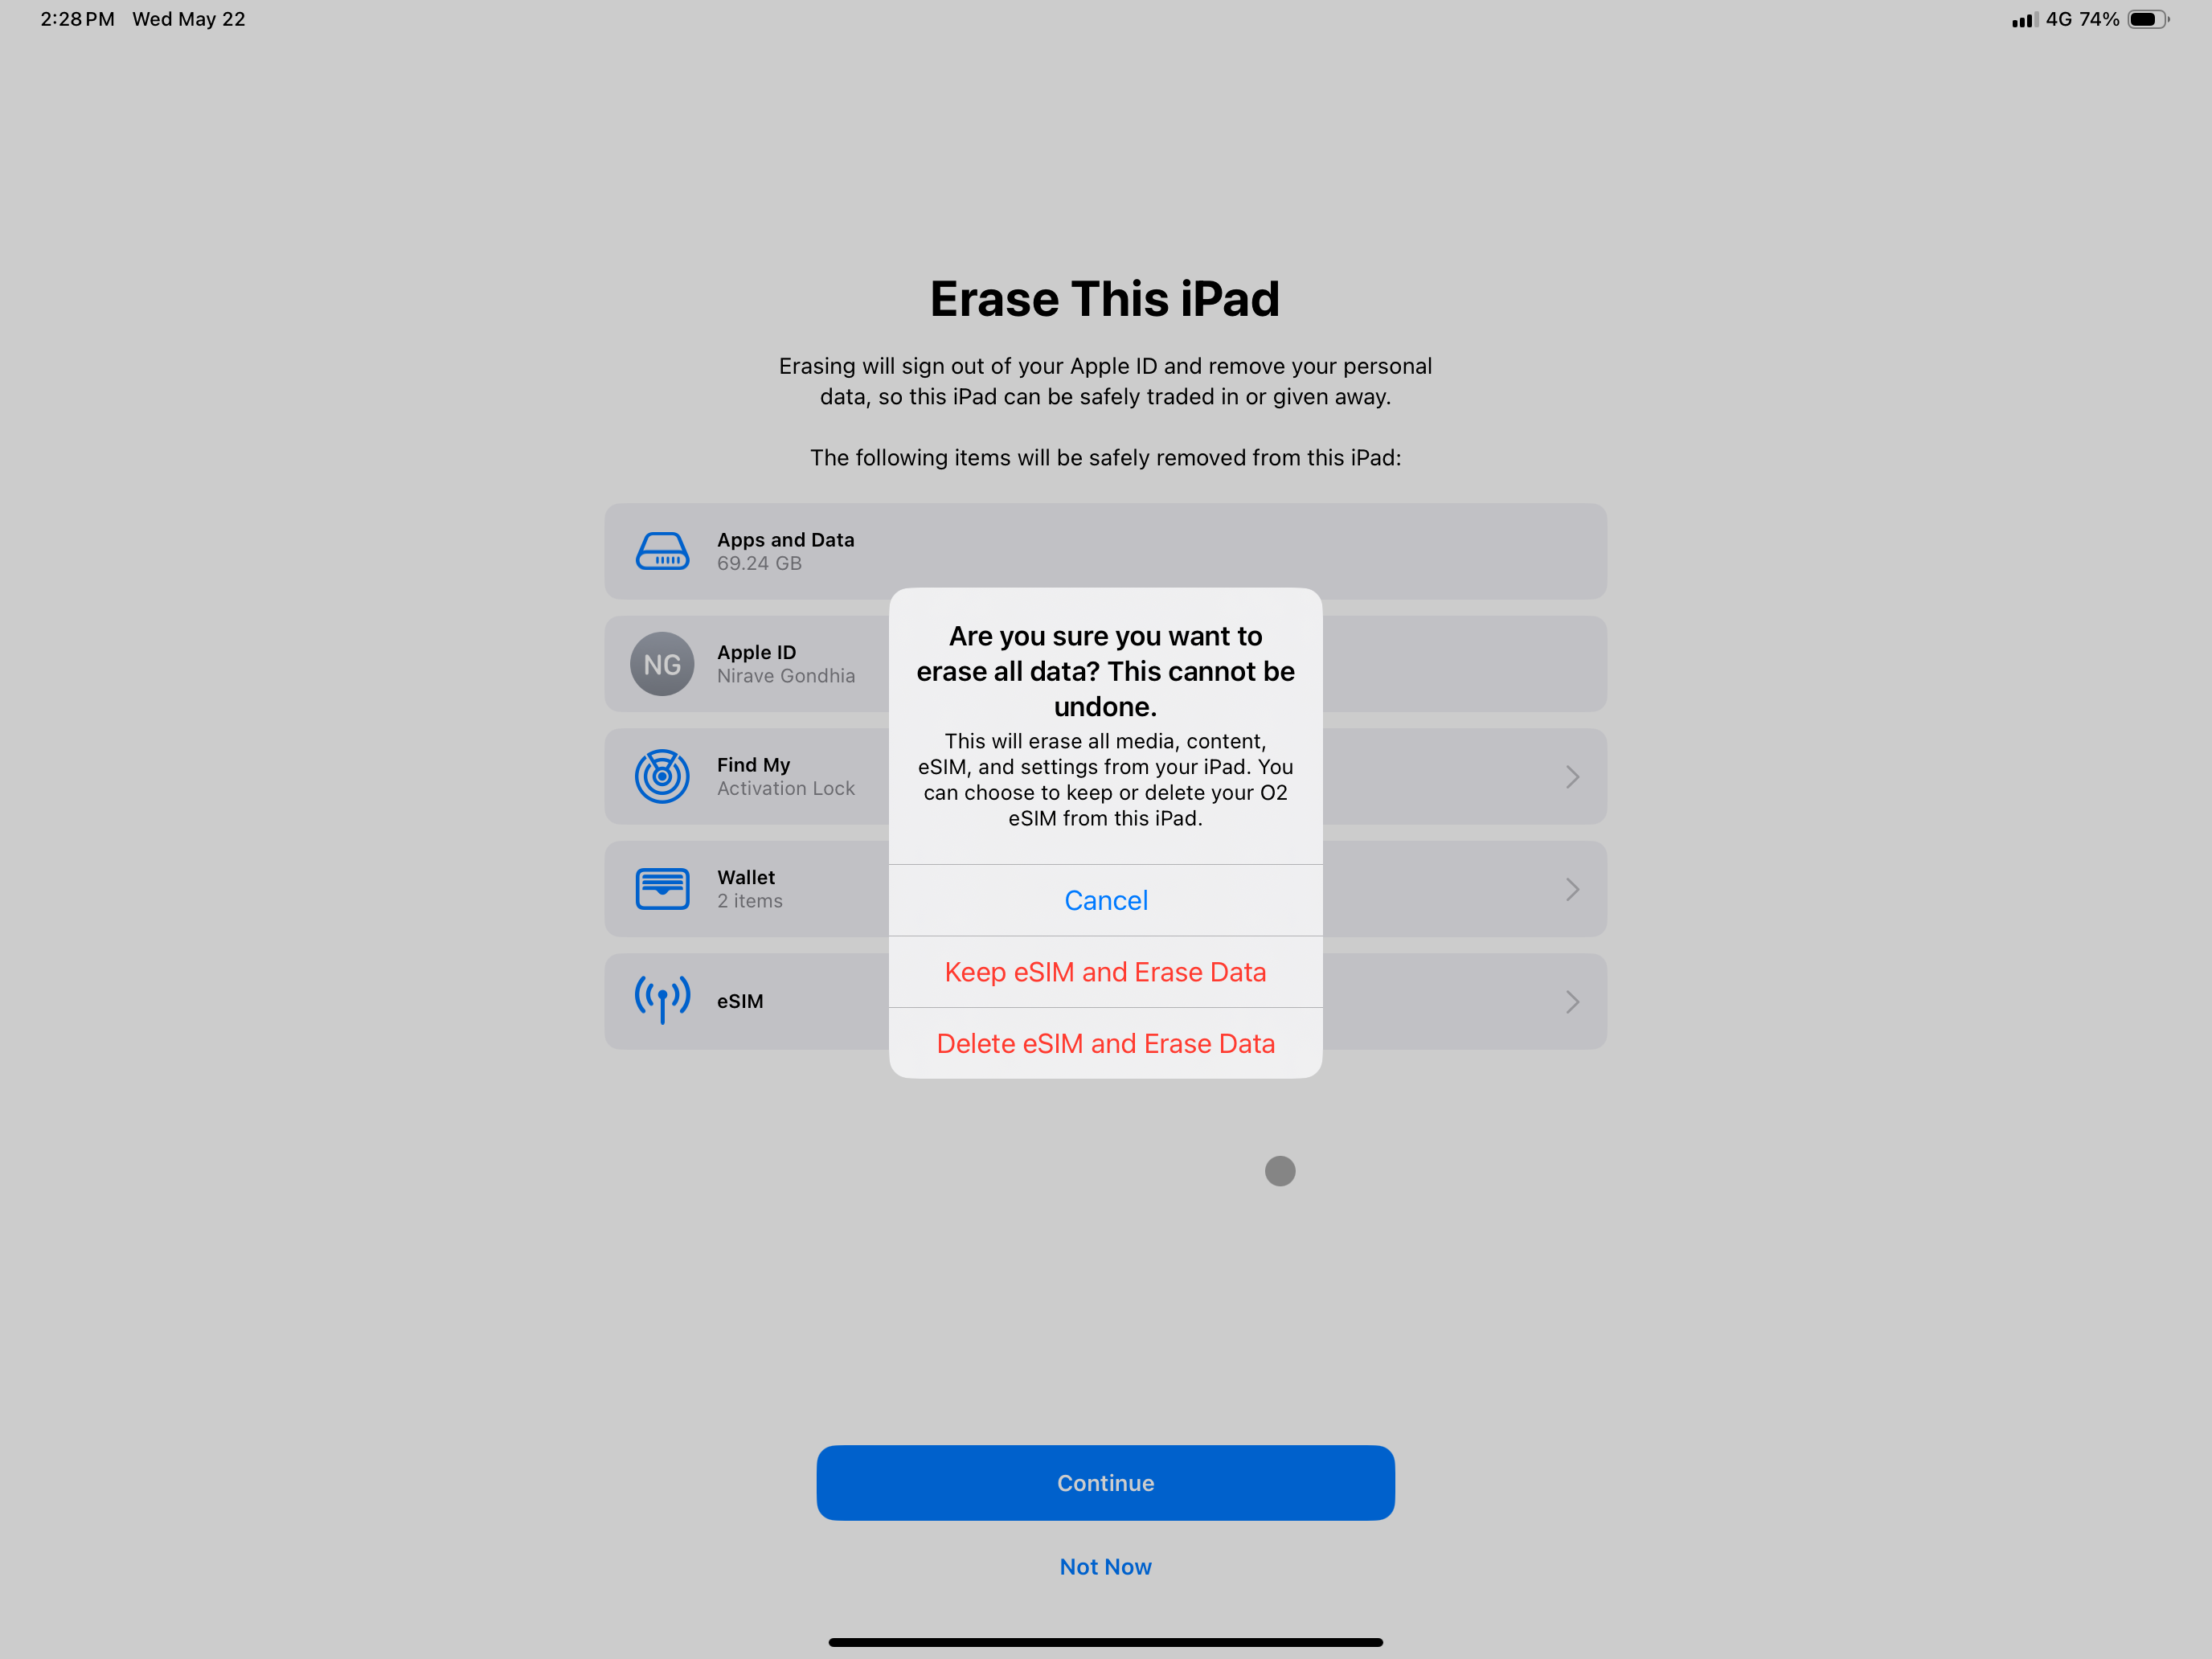 captura de tela mostrando a opção para confirmar a exclusão de dados do iPad